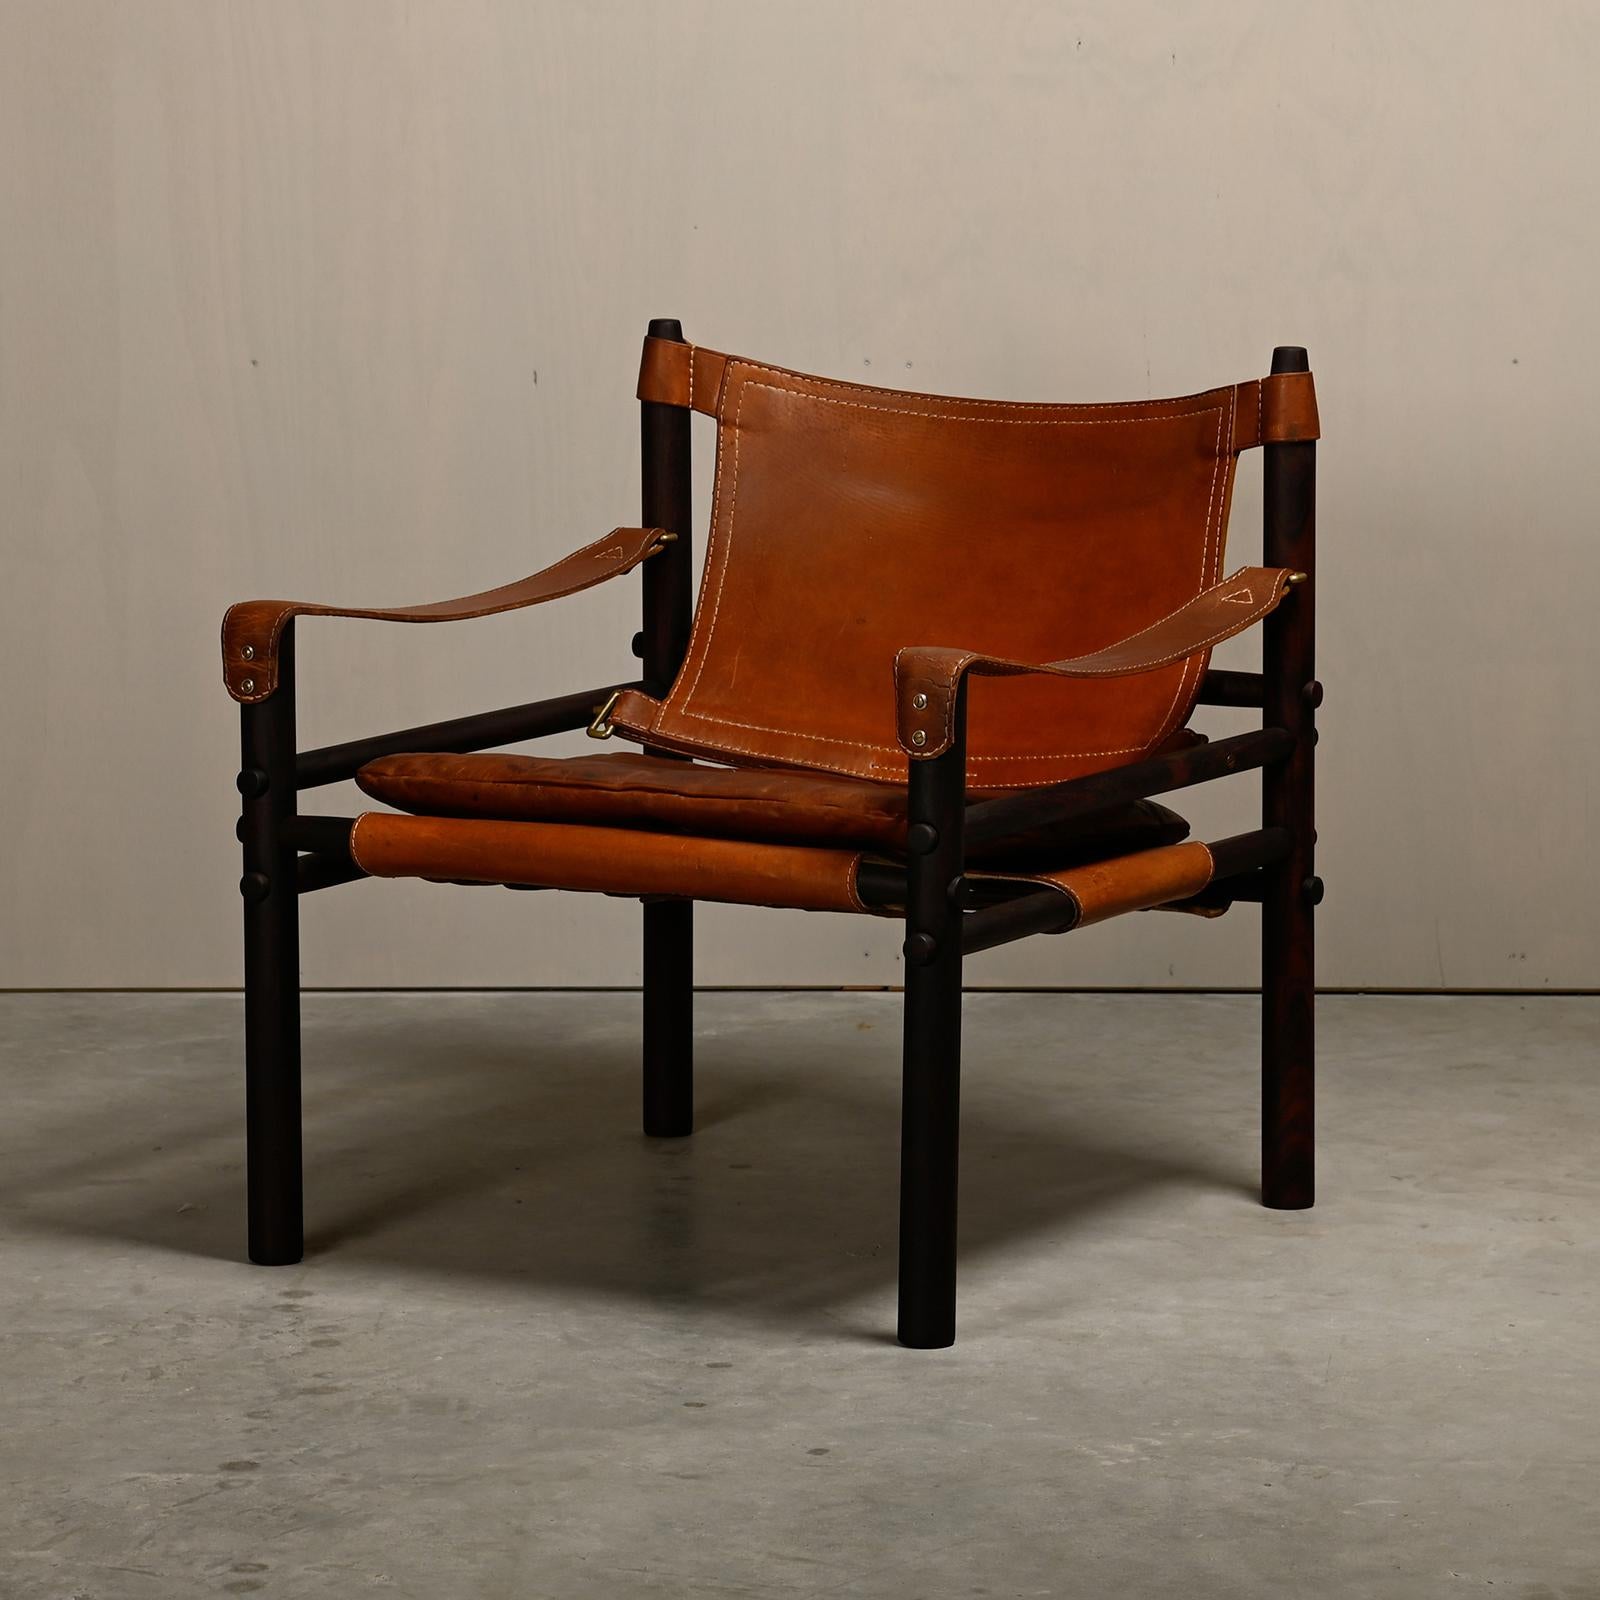 Sirocco Safari Lounge Chair, entworfen von Arne Norell und hergestellt von Norell Möbel AB in Schweden. Neu lackierter dunkelbrauner Palisanderrahmen mit den originalen Lederkissen in schönem, gealtertem braunem Leder. Alle in gutem Vintage-Zustand.